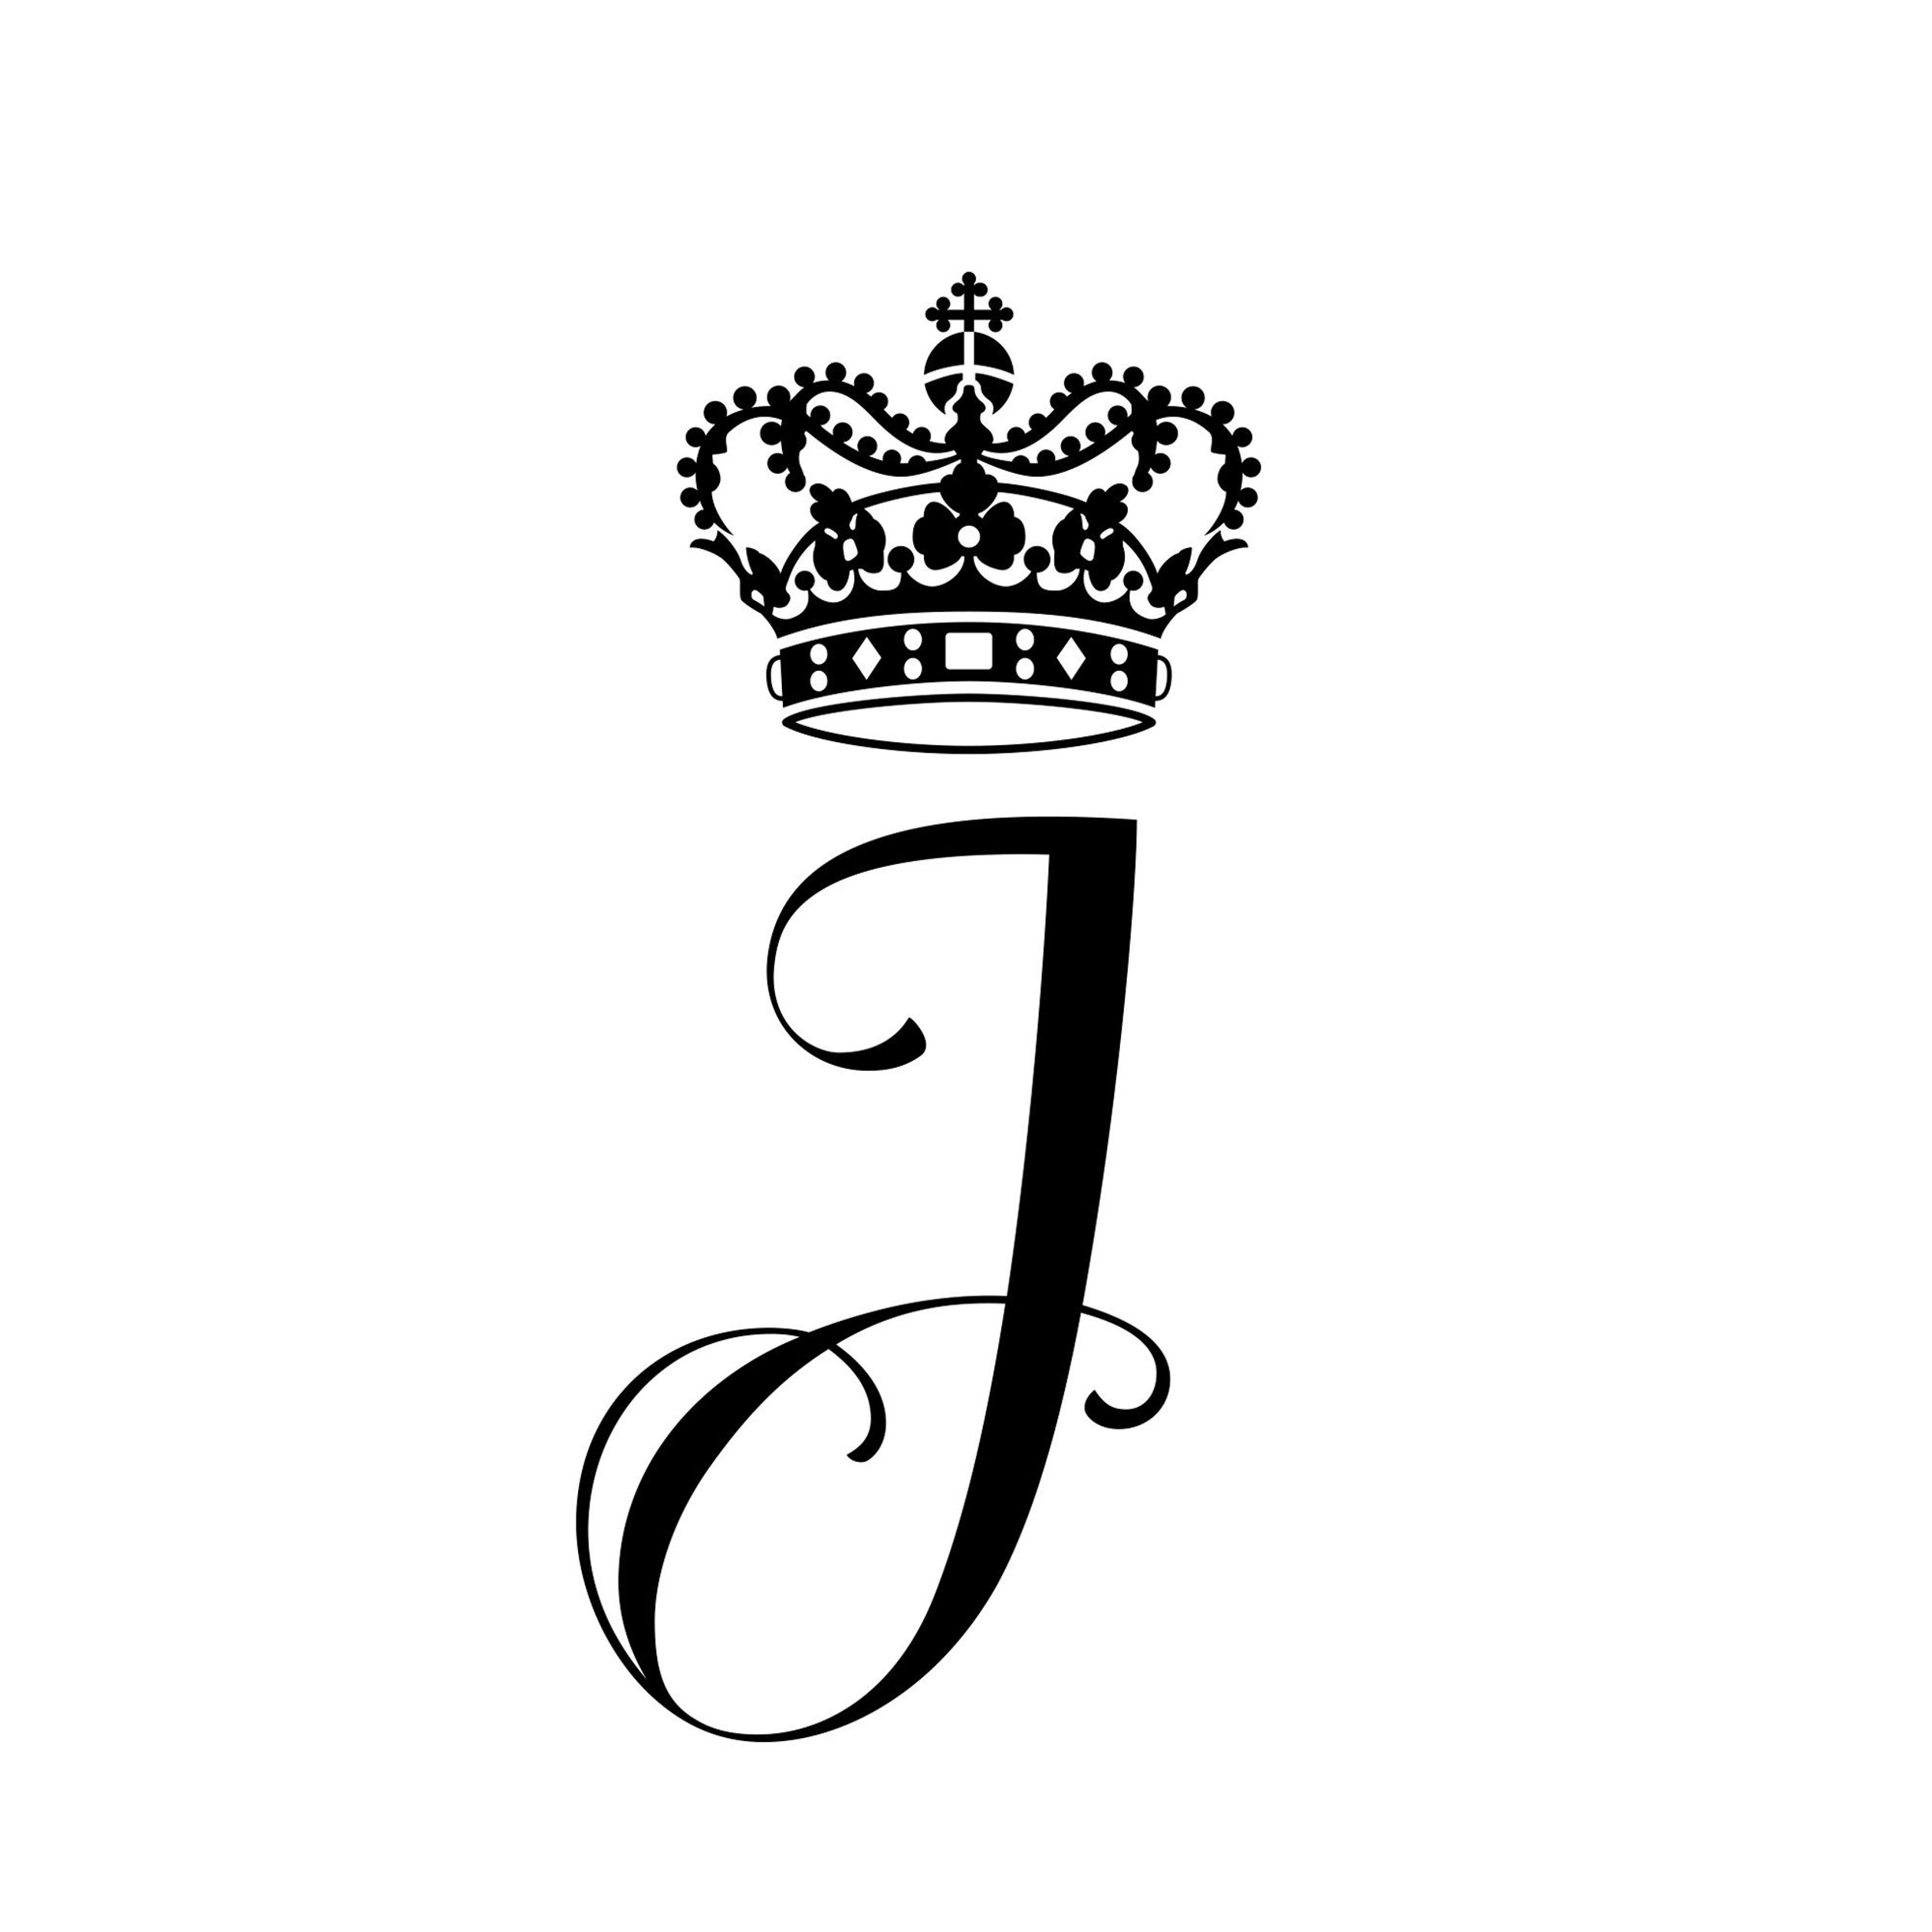 Josephine's monogram.